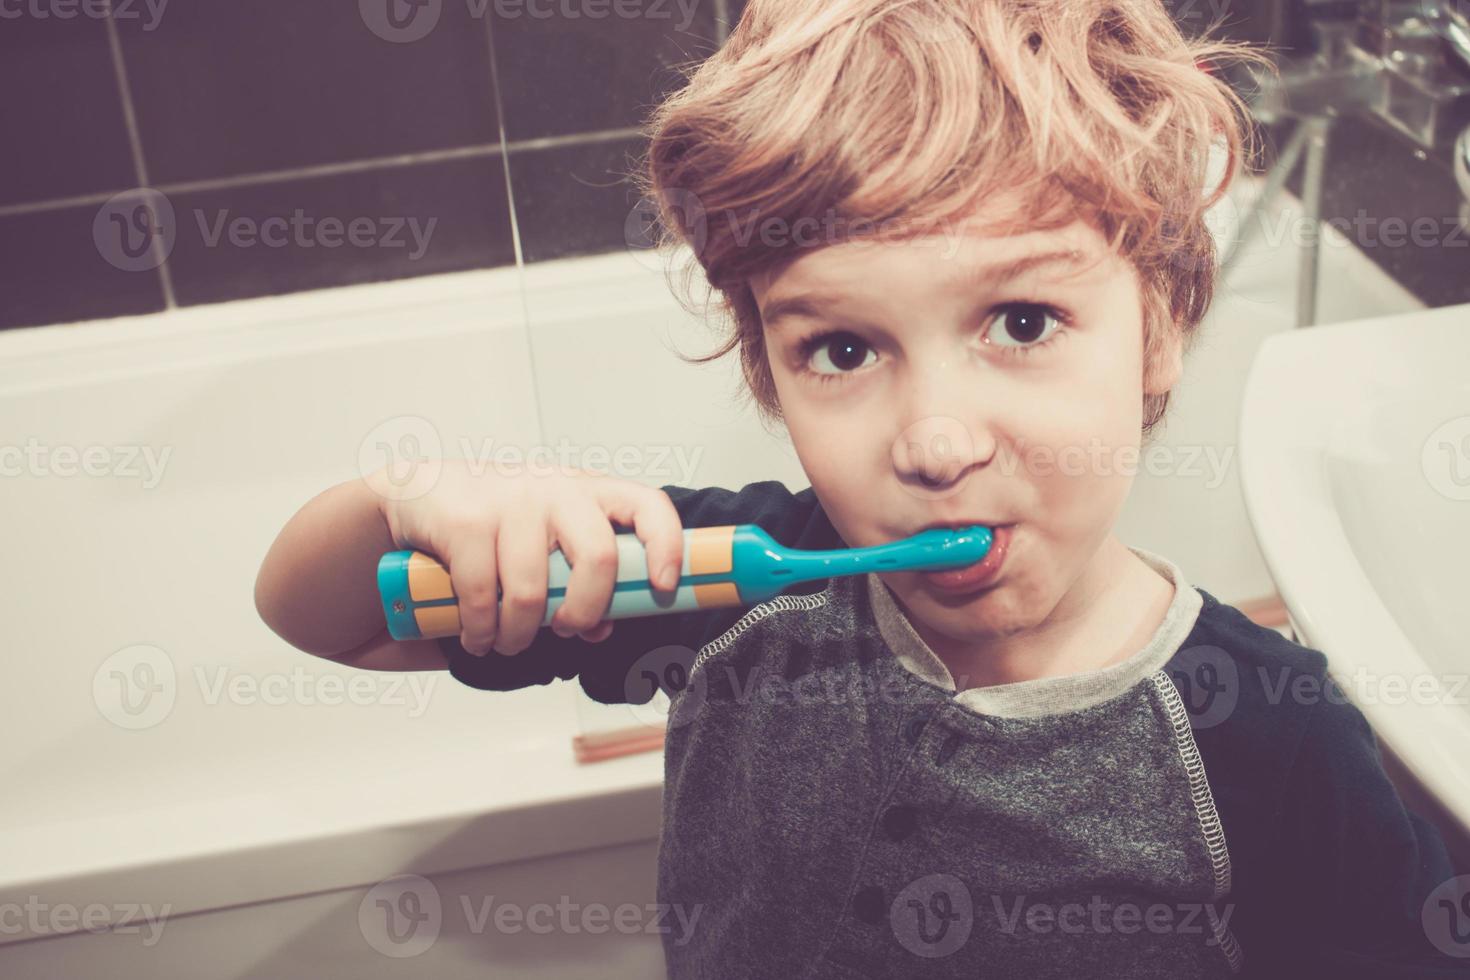 piccolo ragazzo spazzolatura denti nel il bagno. foto